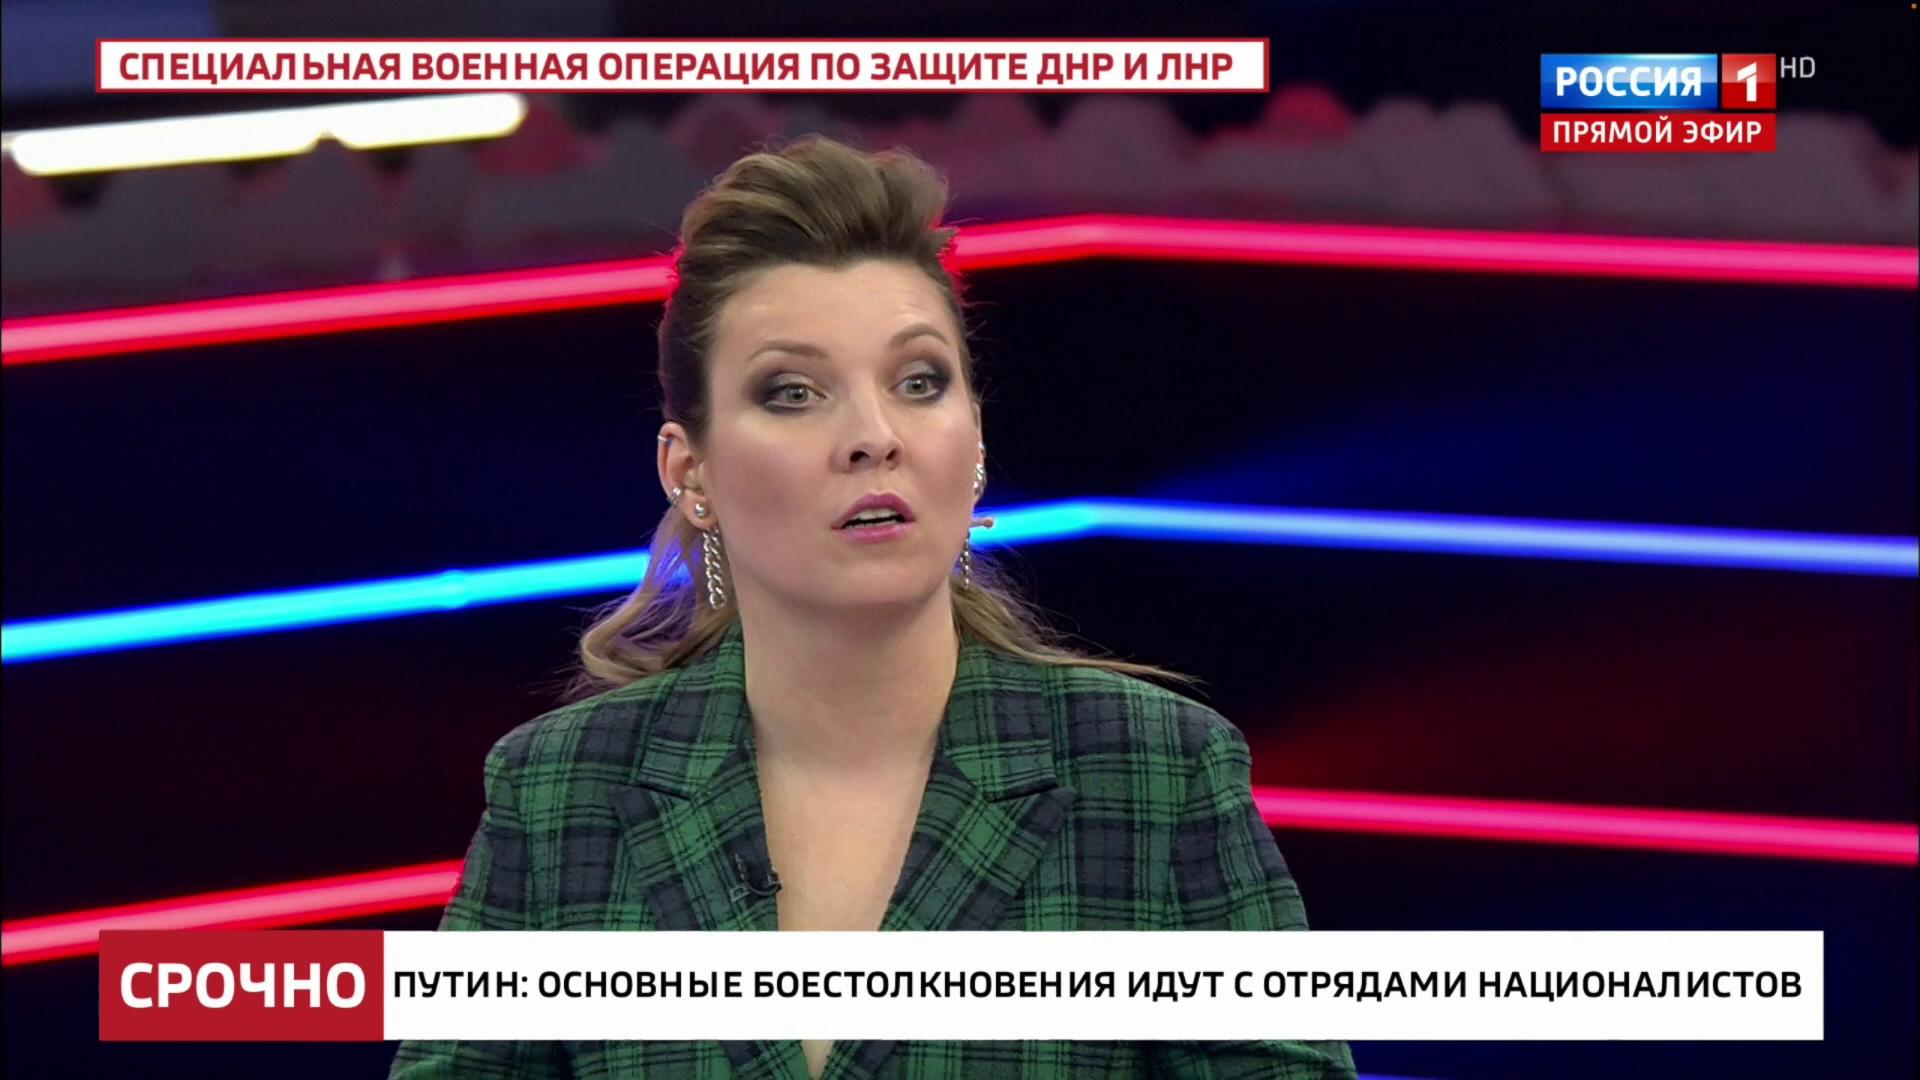 Olga Skabeyeva on her TV show